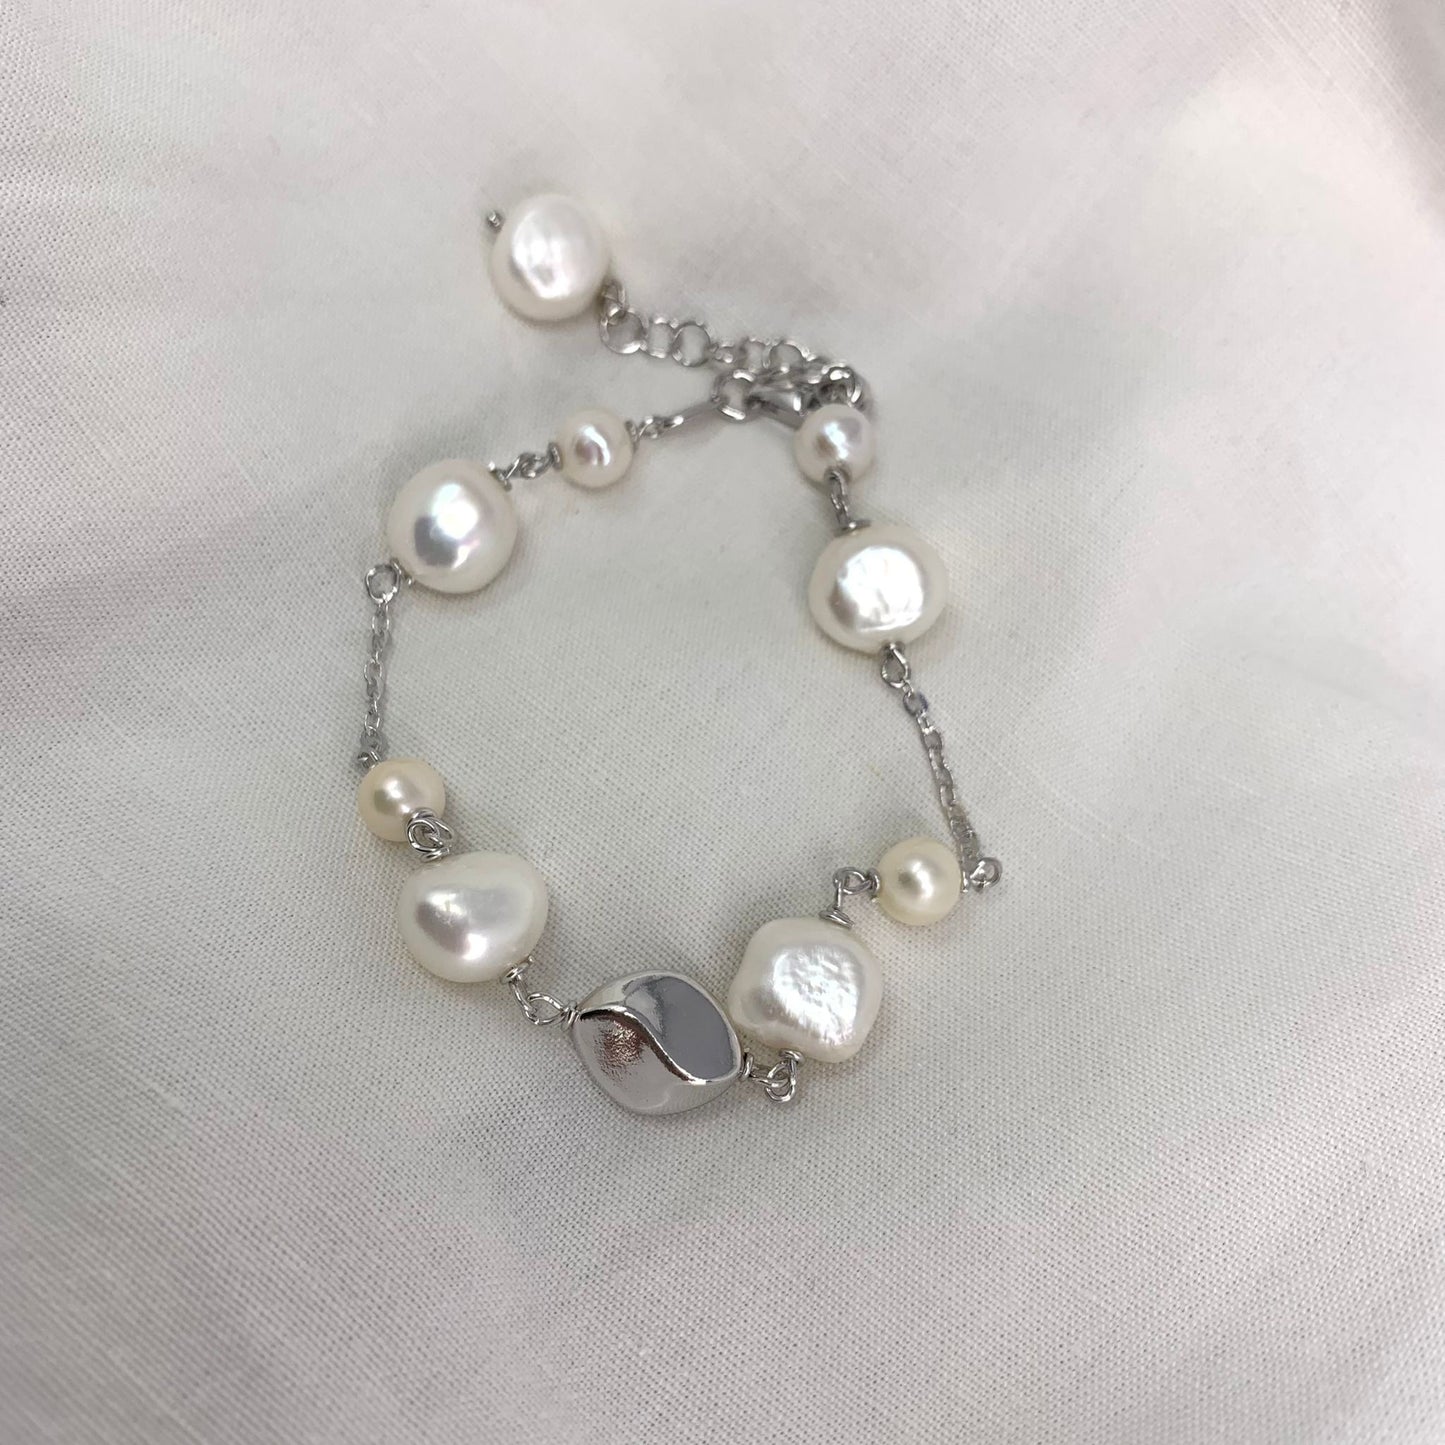 Bracciale argento bianco con perle sassetto bianche e pepita onda